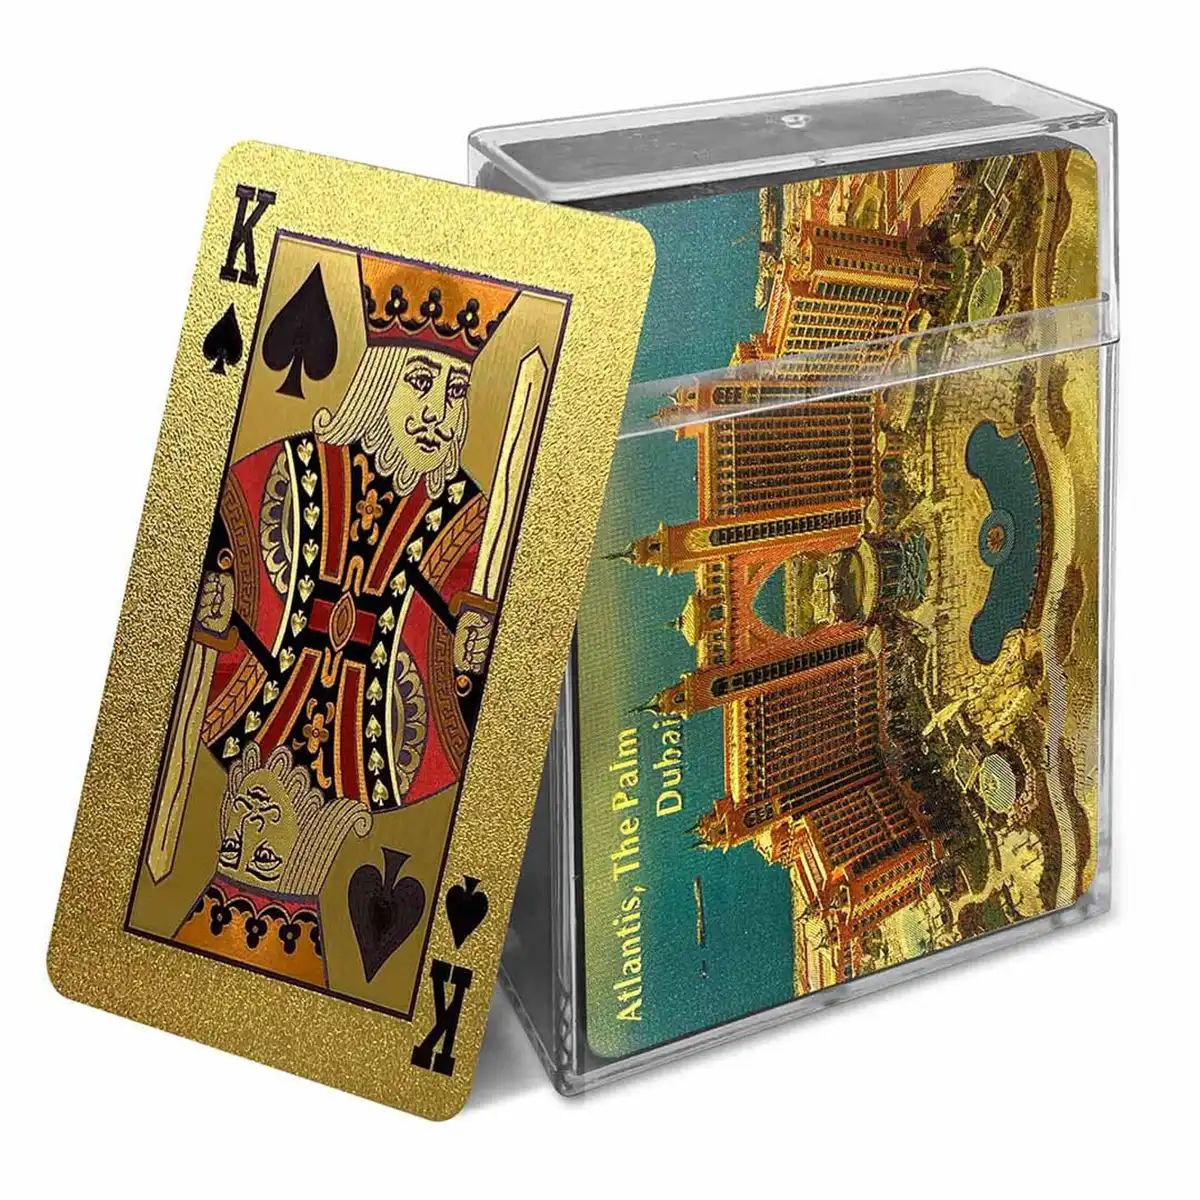 Goldfolien-Spielkarten mit City of the Palm